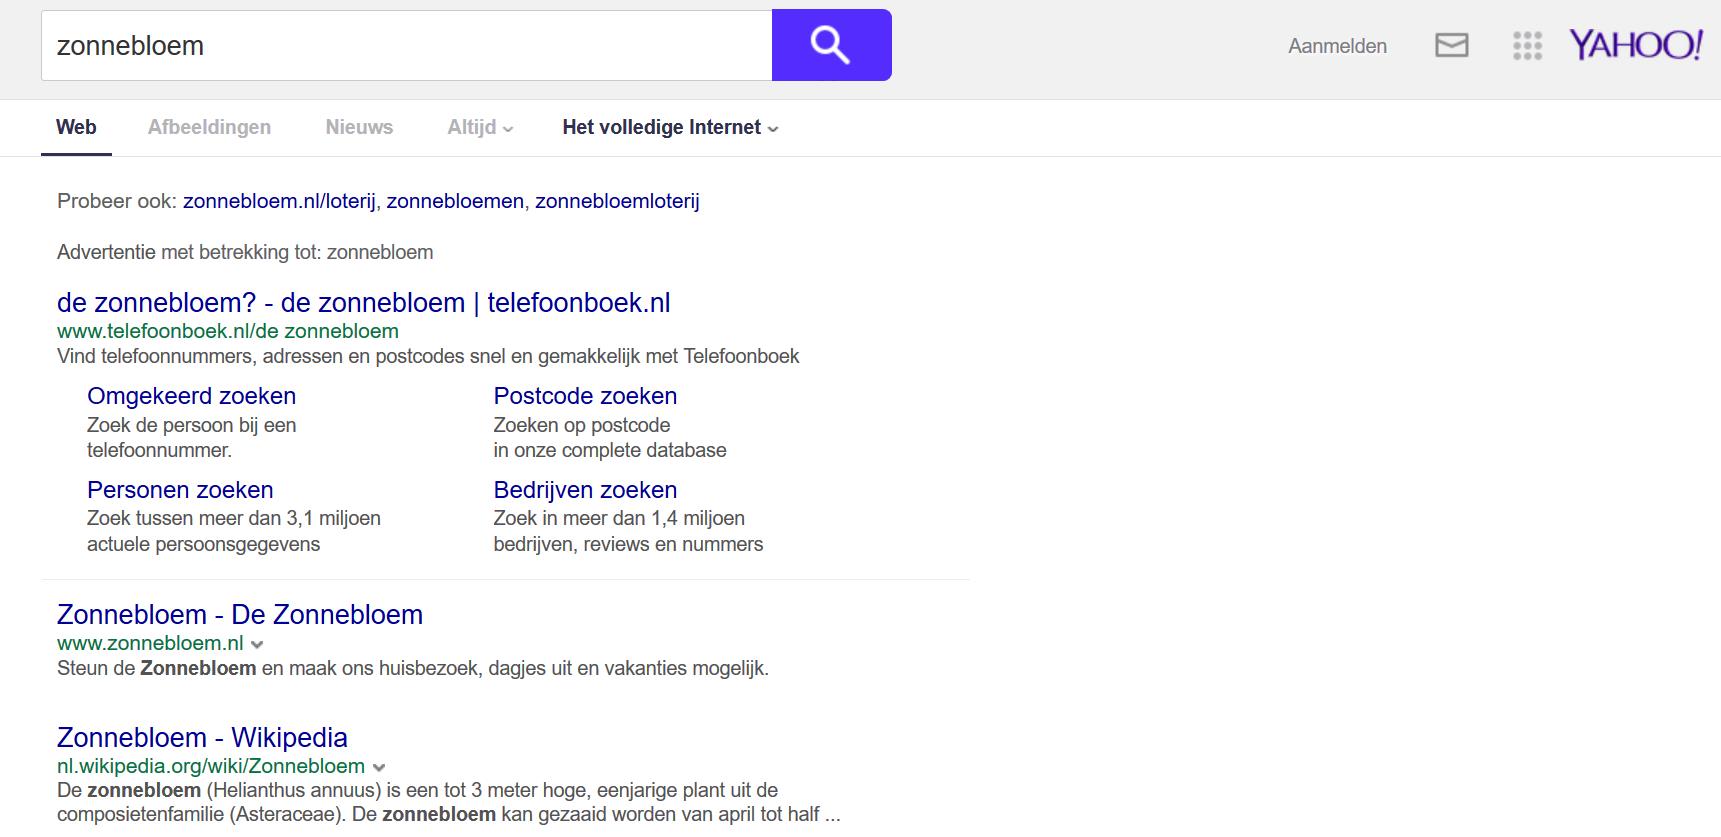 Alternatieven zoekmachines: Yahoo